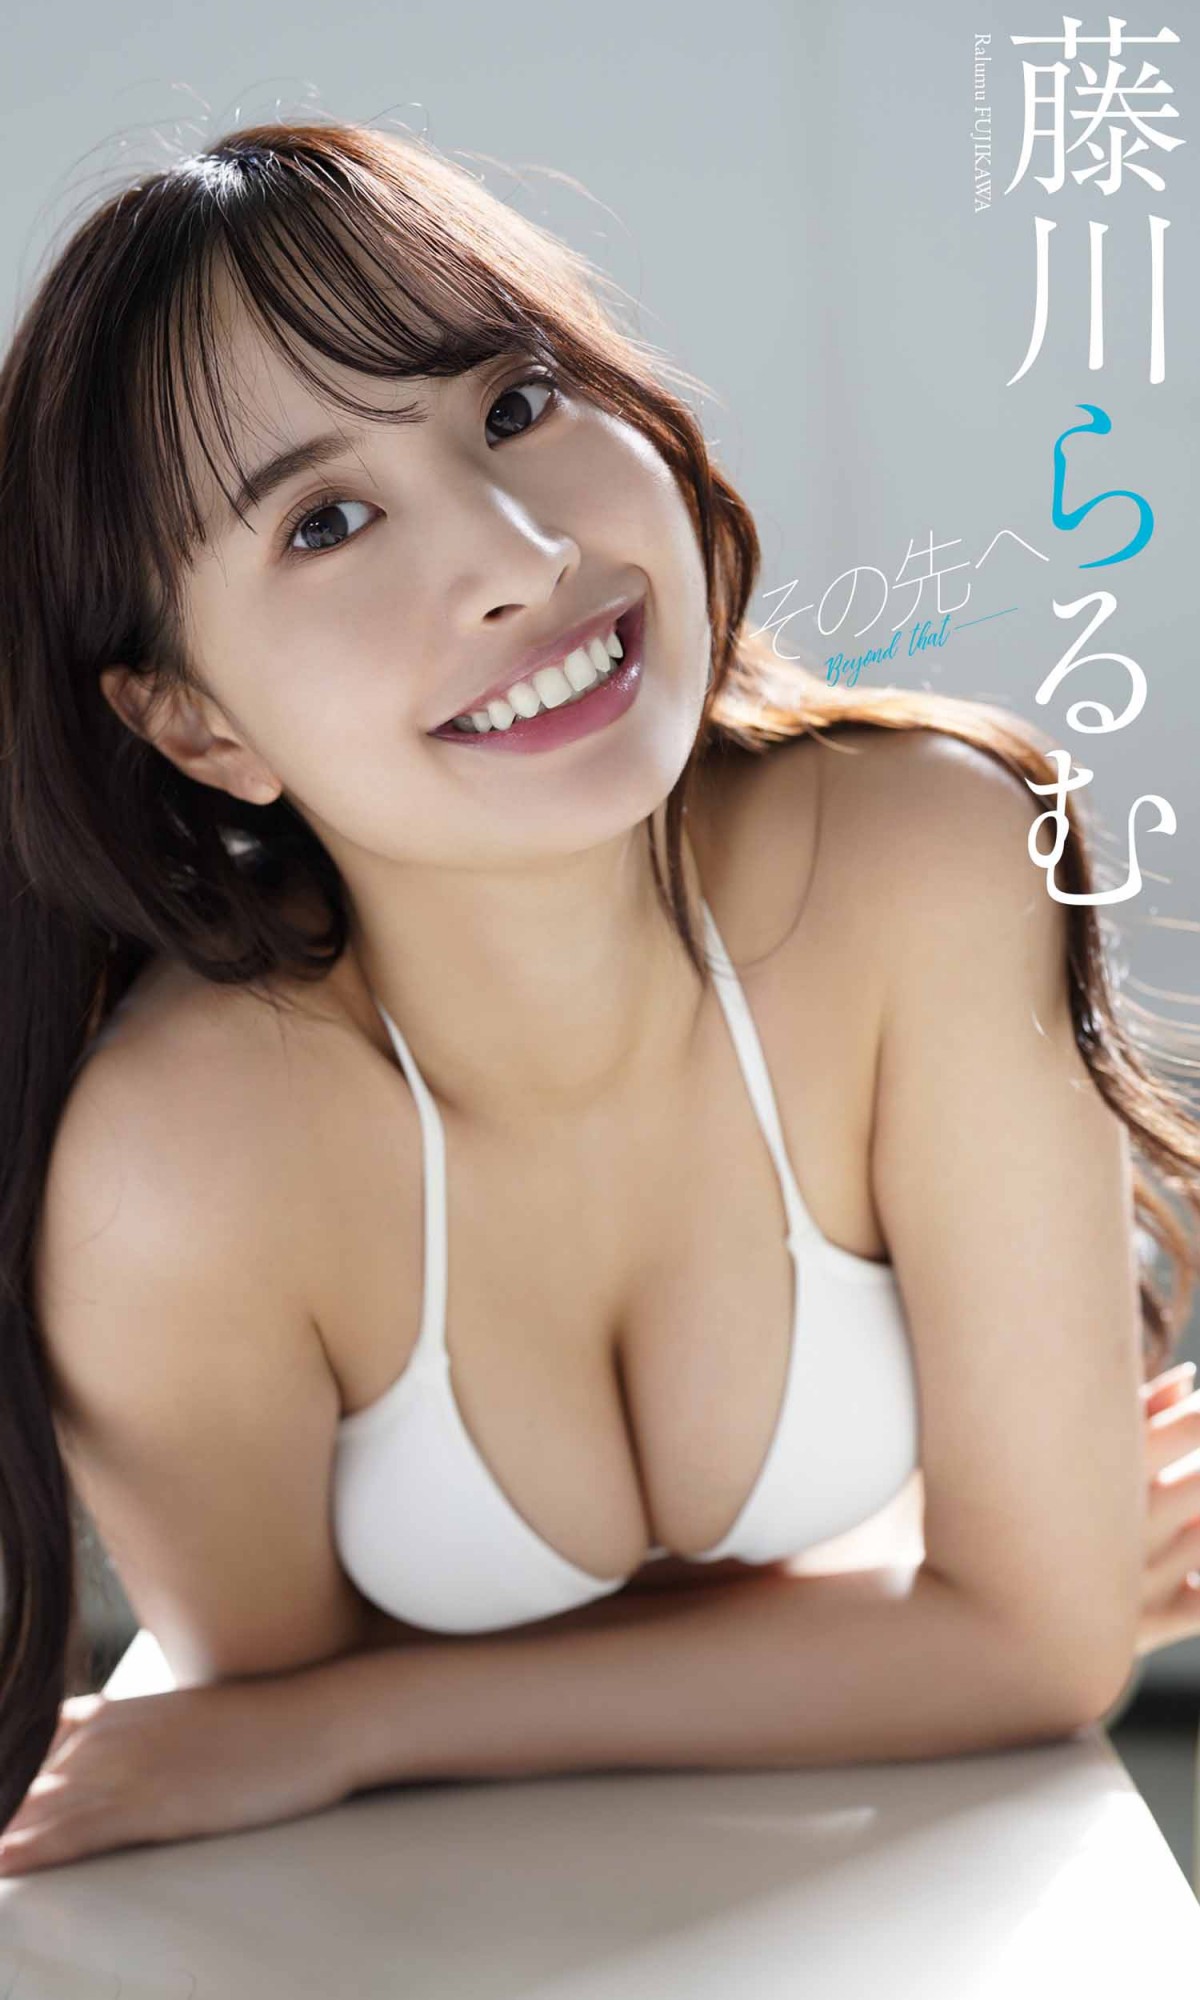 注目女優・青木胡杜音21歳、8等頭スレンダーボディの正当派美女が魅せるグラビア